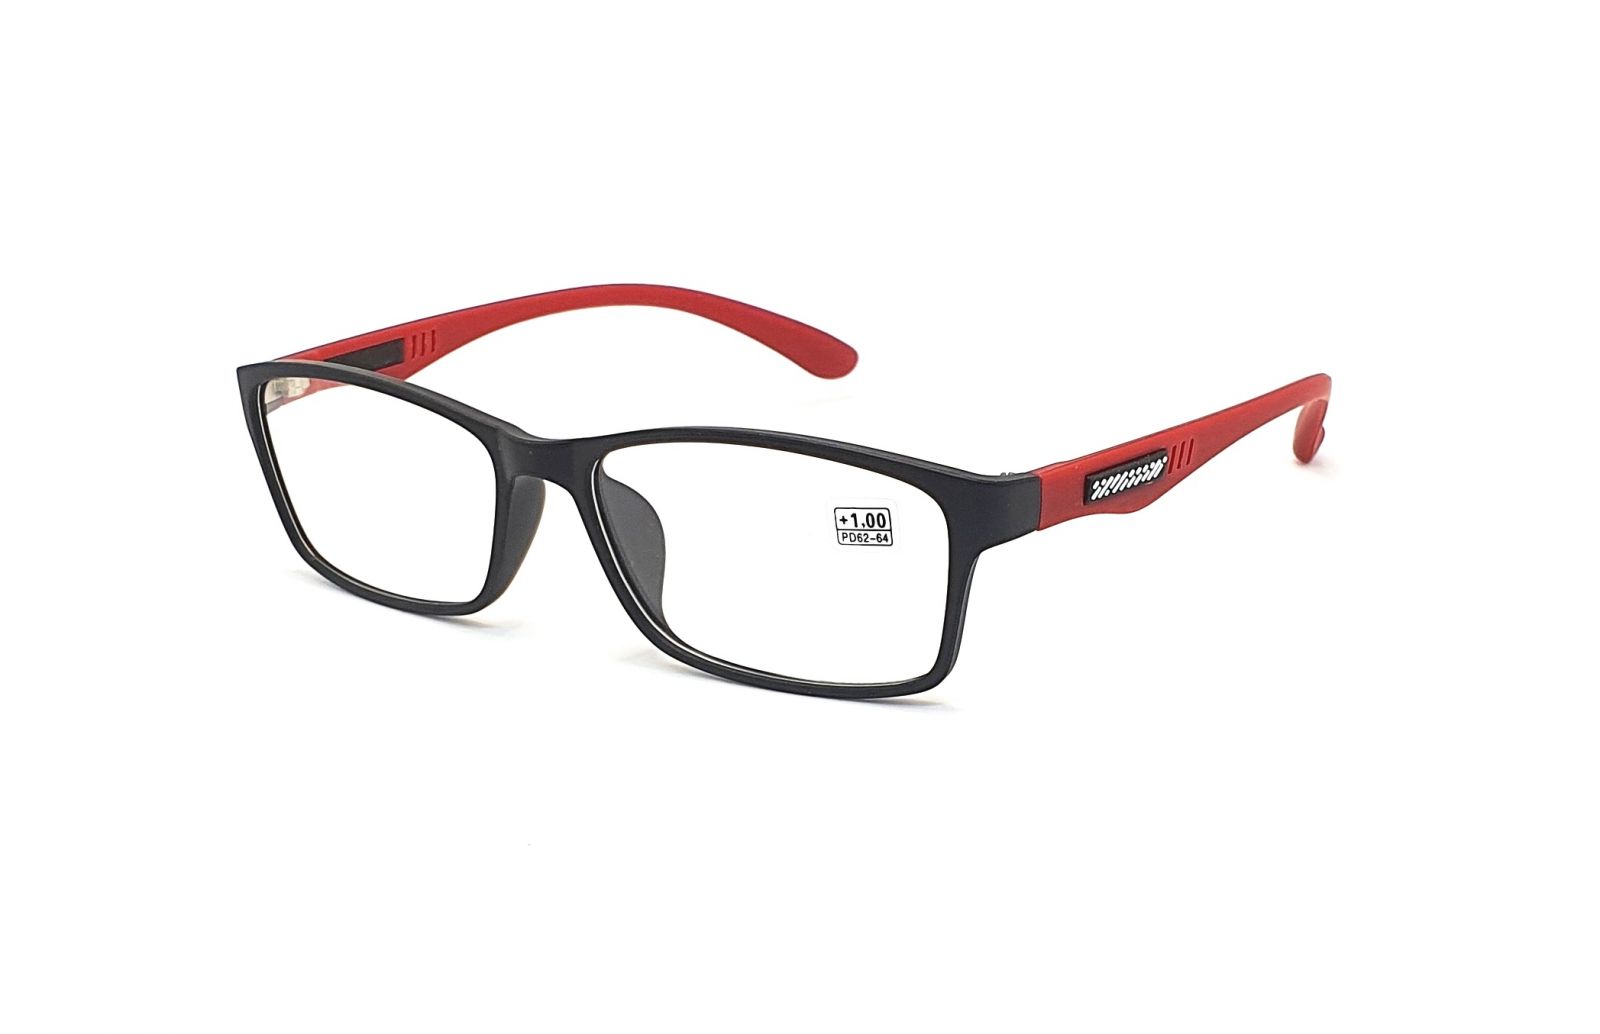 Dioptrické brýle CH8801 +3,50 black/red